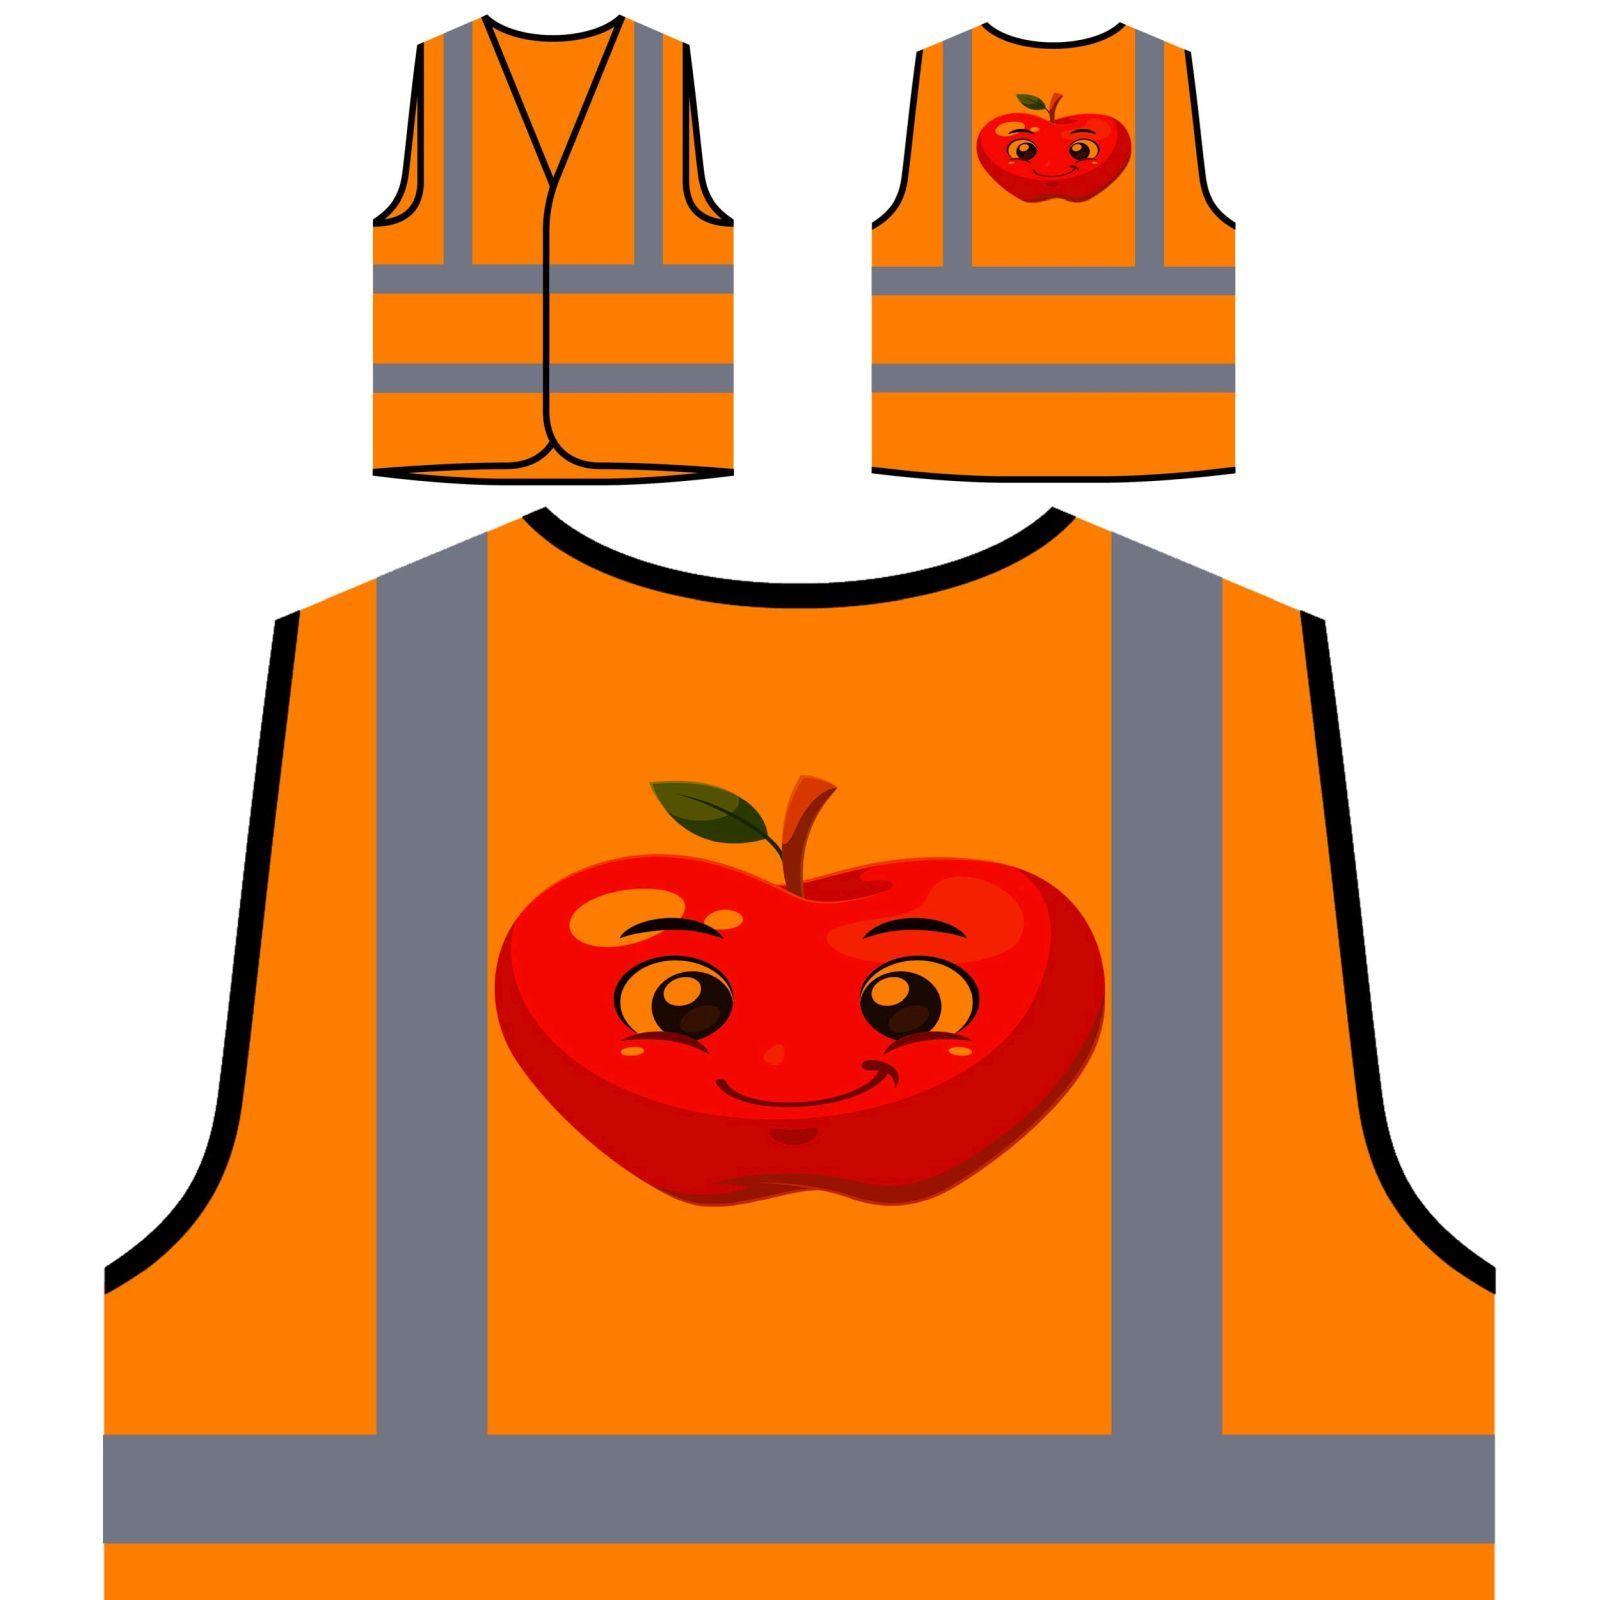 Red Yellow Orange Logo - Red Apple Smiley Yellow/Orange Safety Vest u632v | eBay